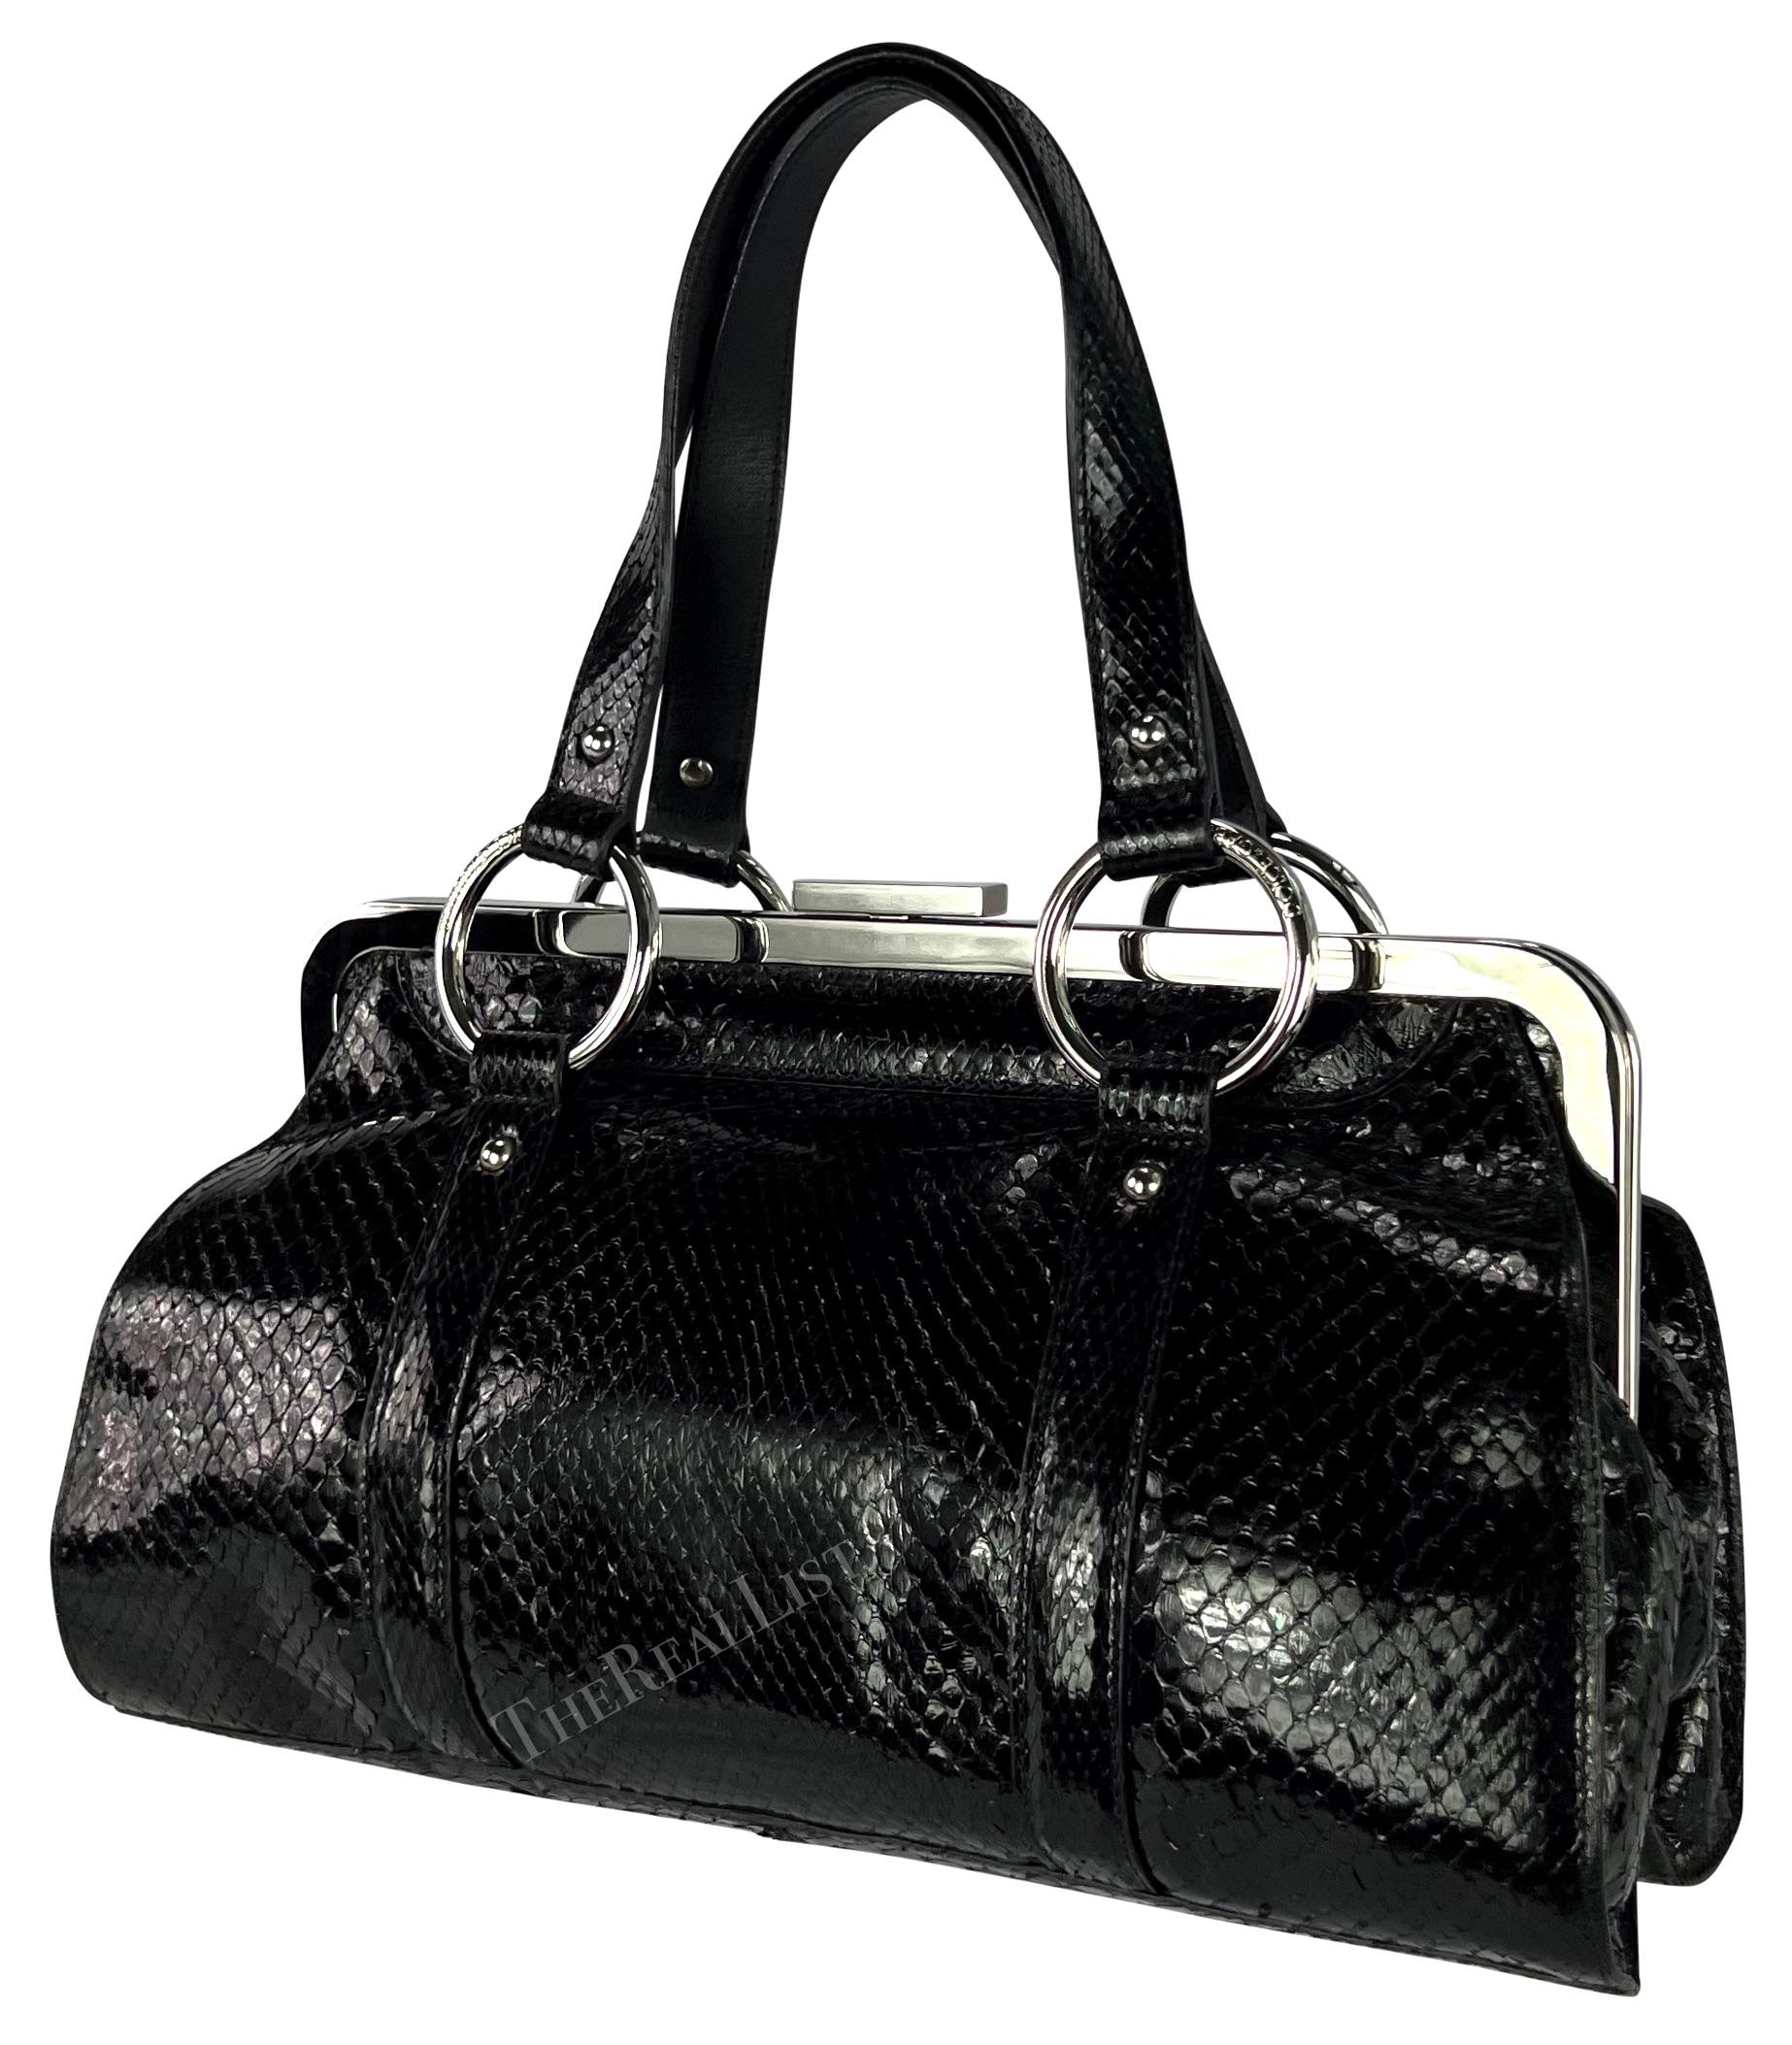 S/S 2003 Dolce & Gabbana Runway Black Python Leather Ring Shoulder Bag For Sale 5